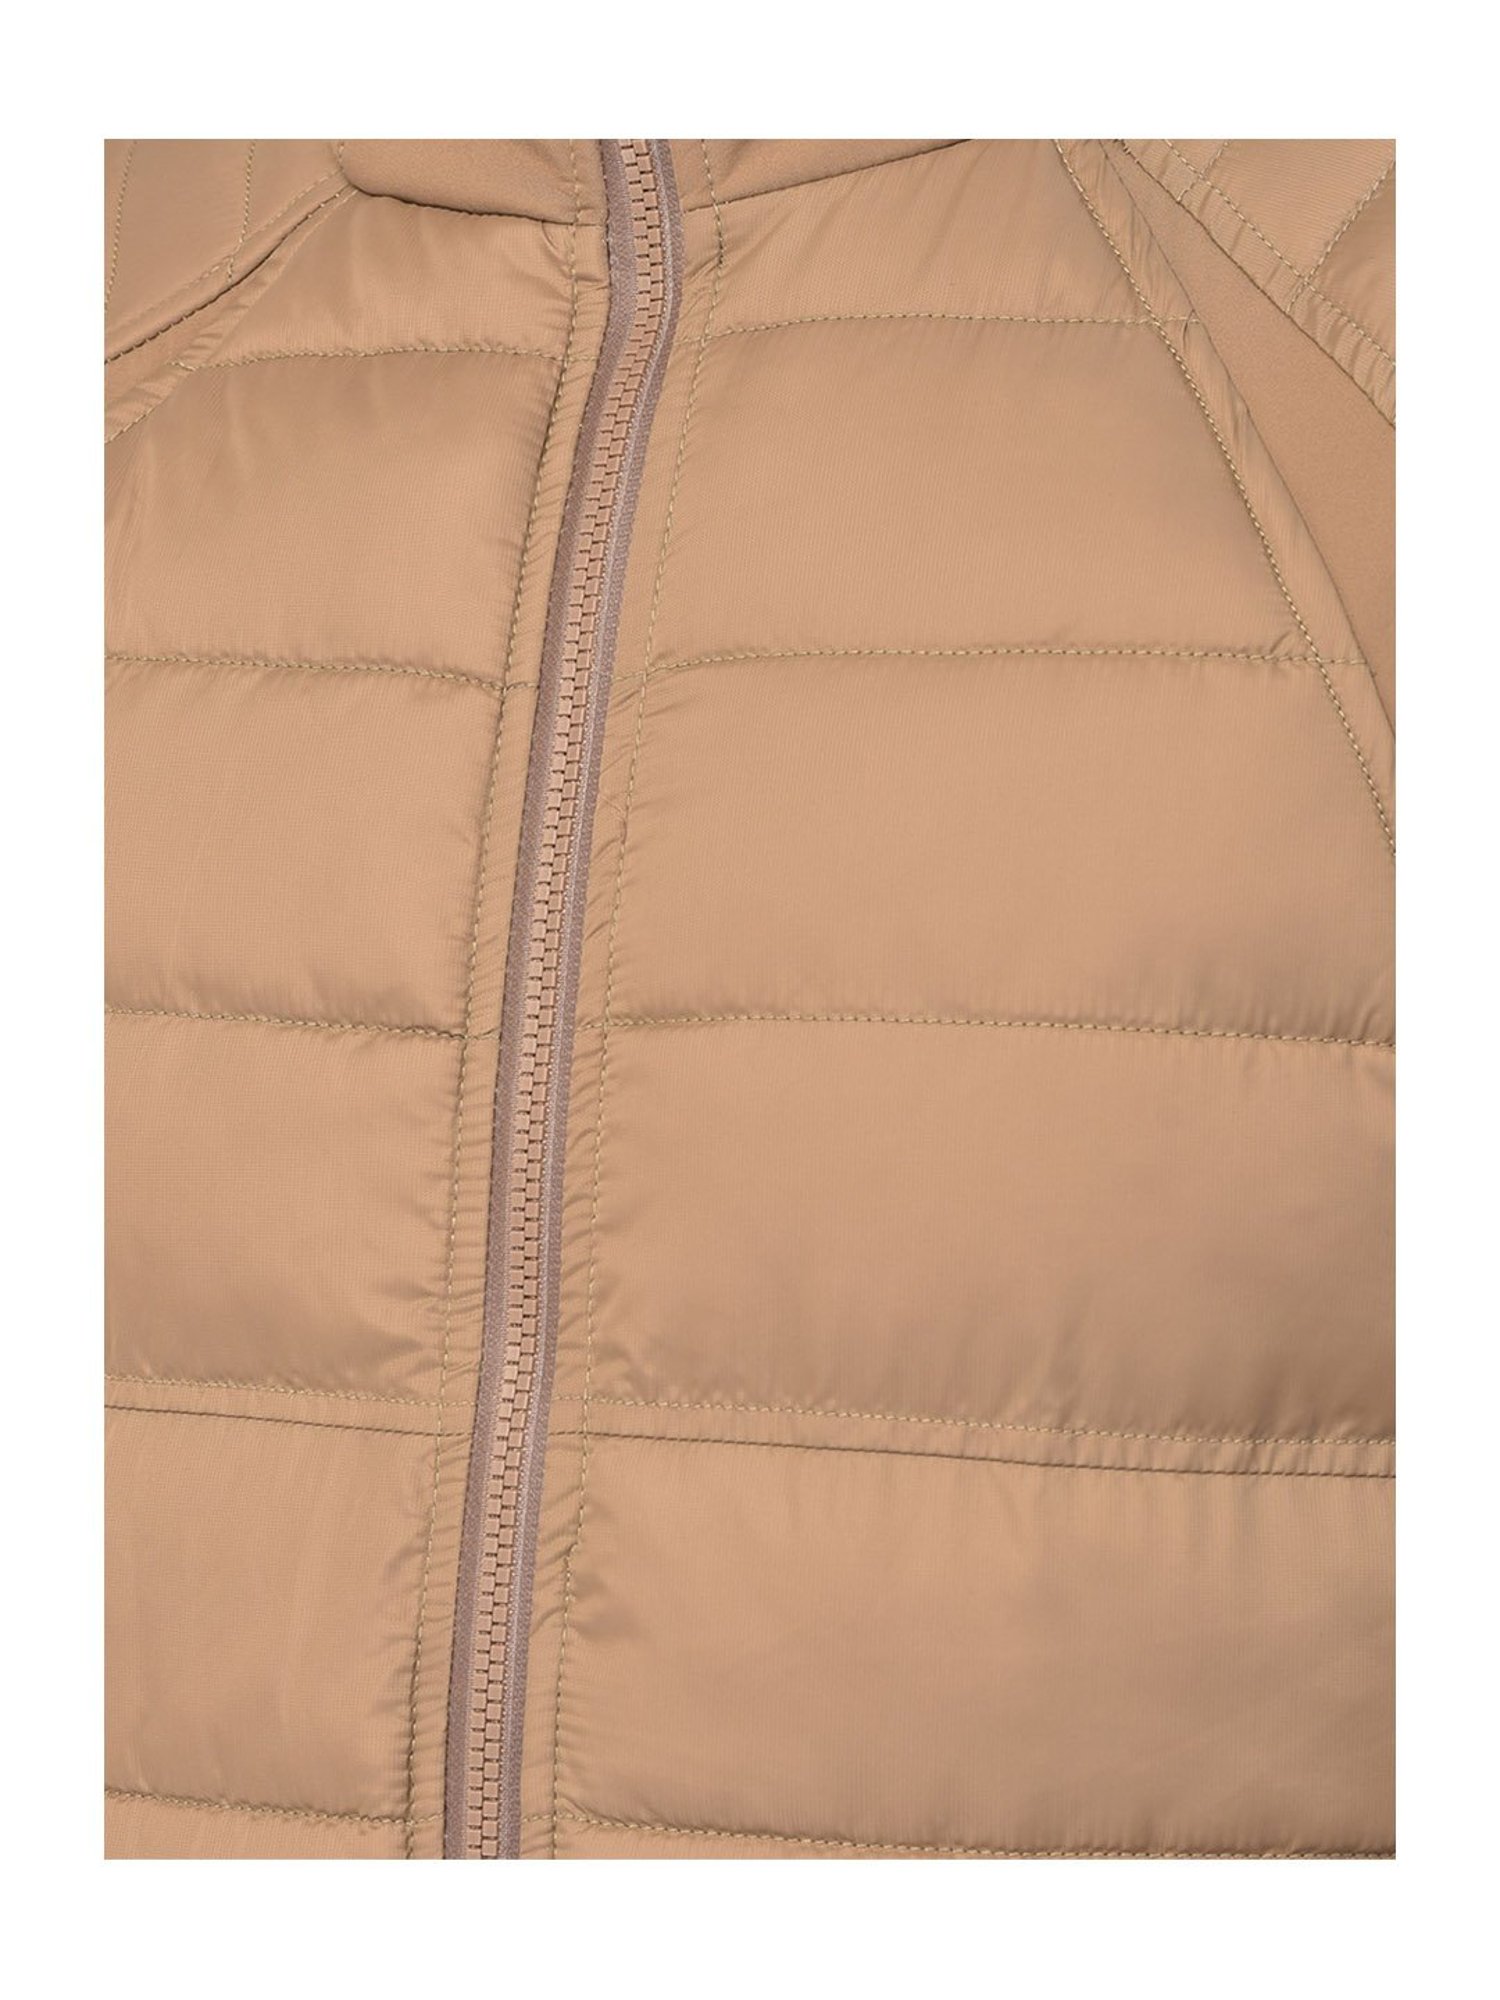 सबसे अच्छी Jacket|Jacket Wholesale Market In  Delhi|Leather,Hoddie,Upper|Jafrabad Jacket Manufacturer - YouTube